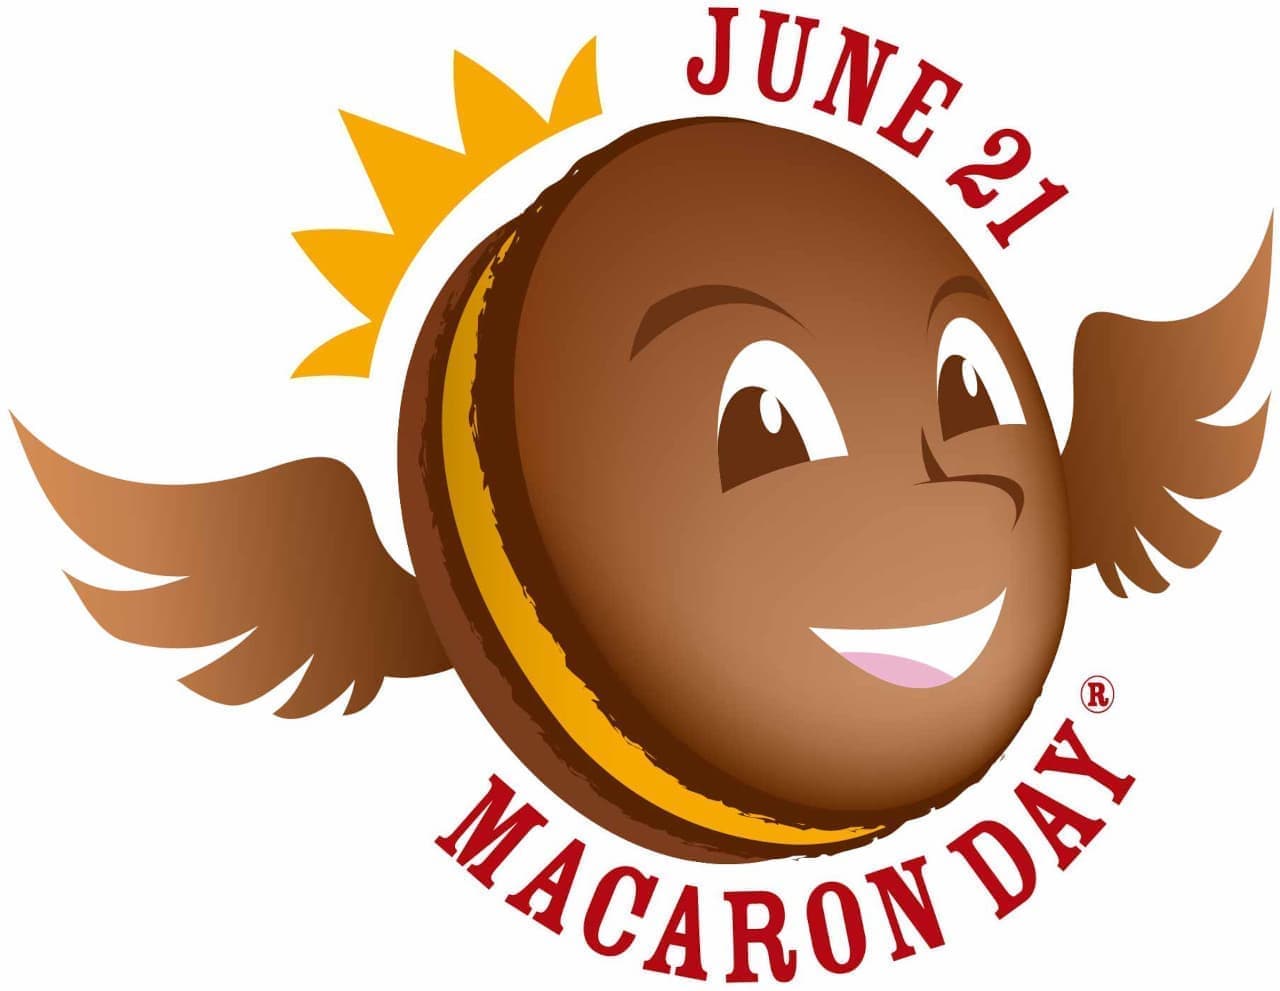 Pierre Hermé "Macaron Day" 